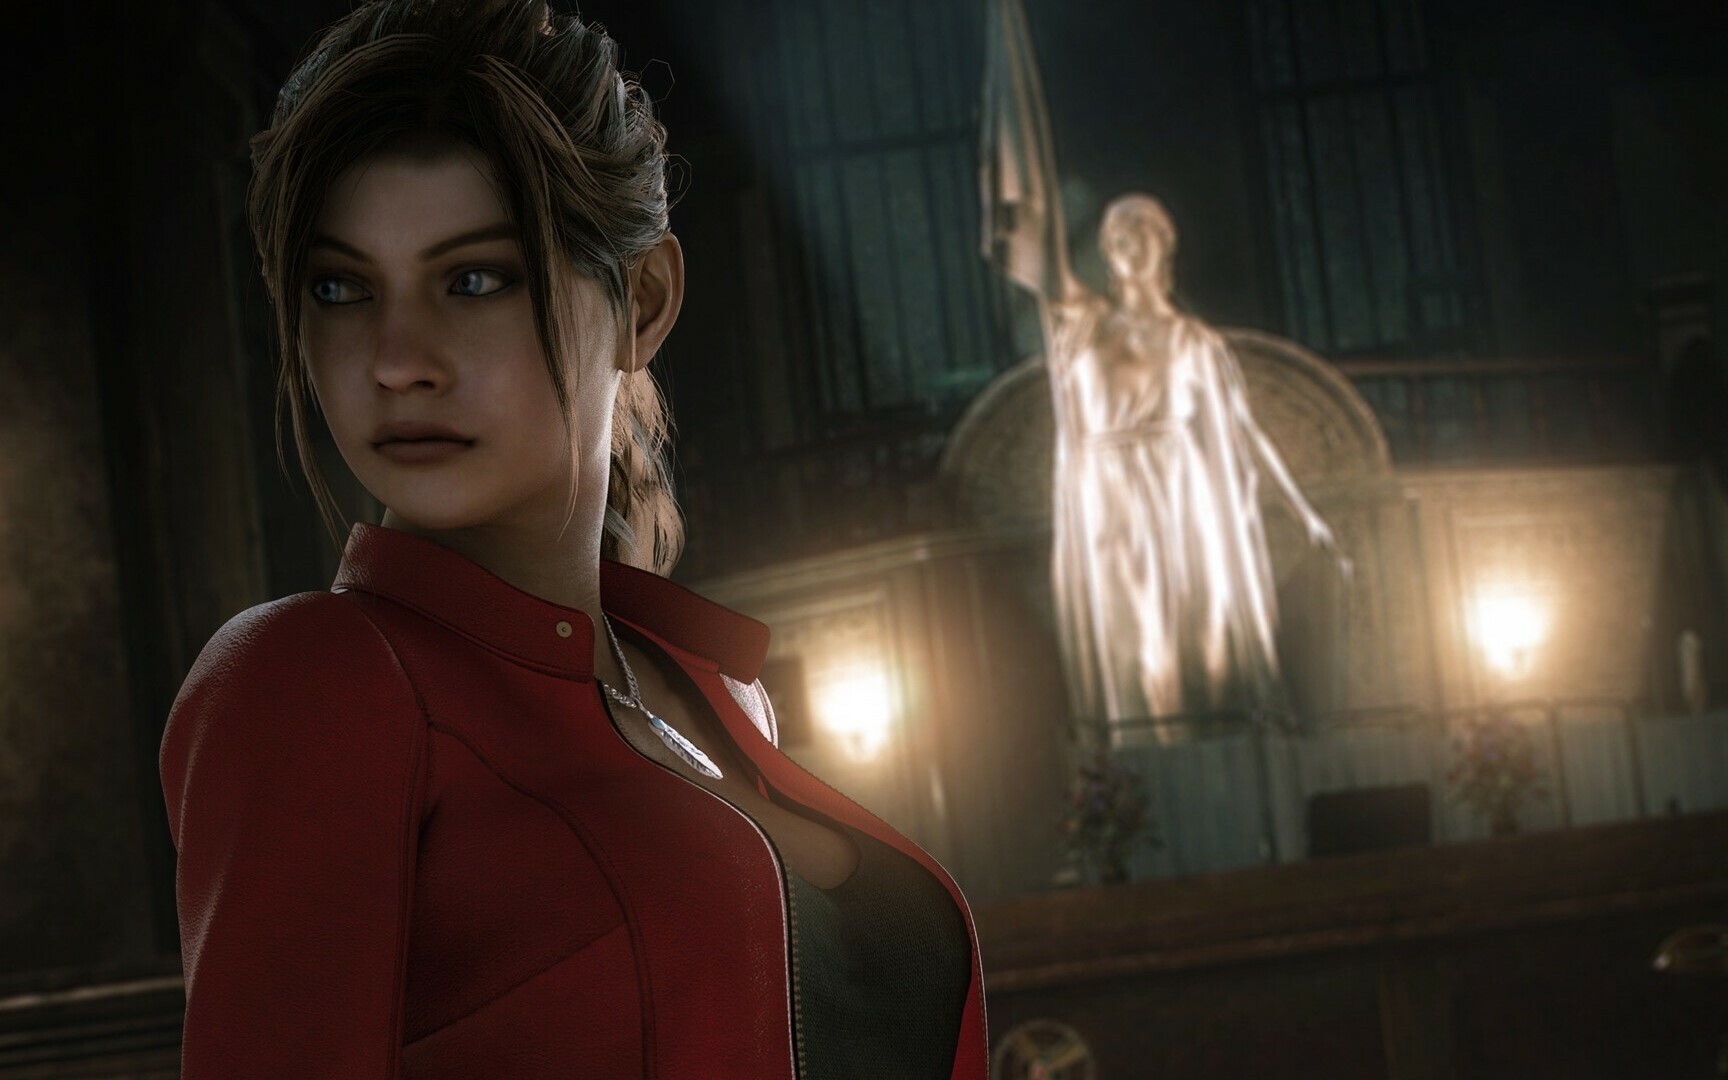 ¡Resident Evil Code Veronica Remake probablemente esté en proceso!  Capcom pidió que se cancelara el proyecto de fans